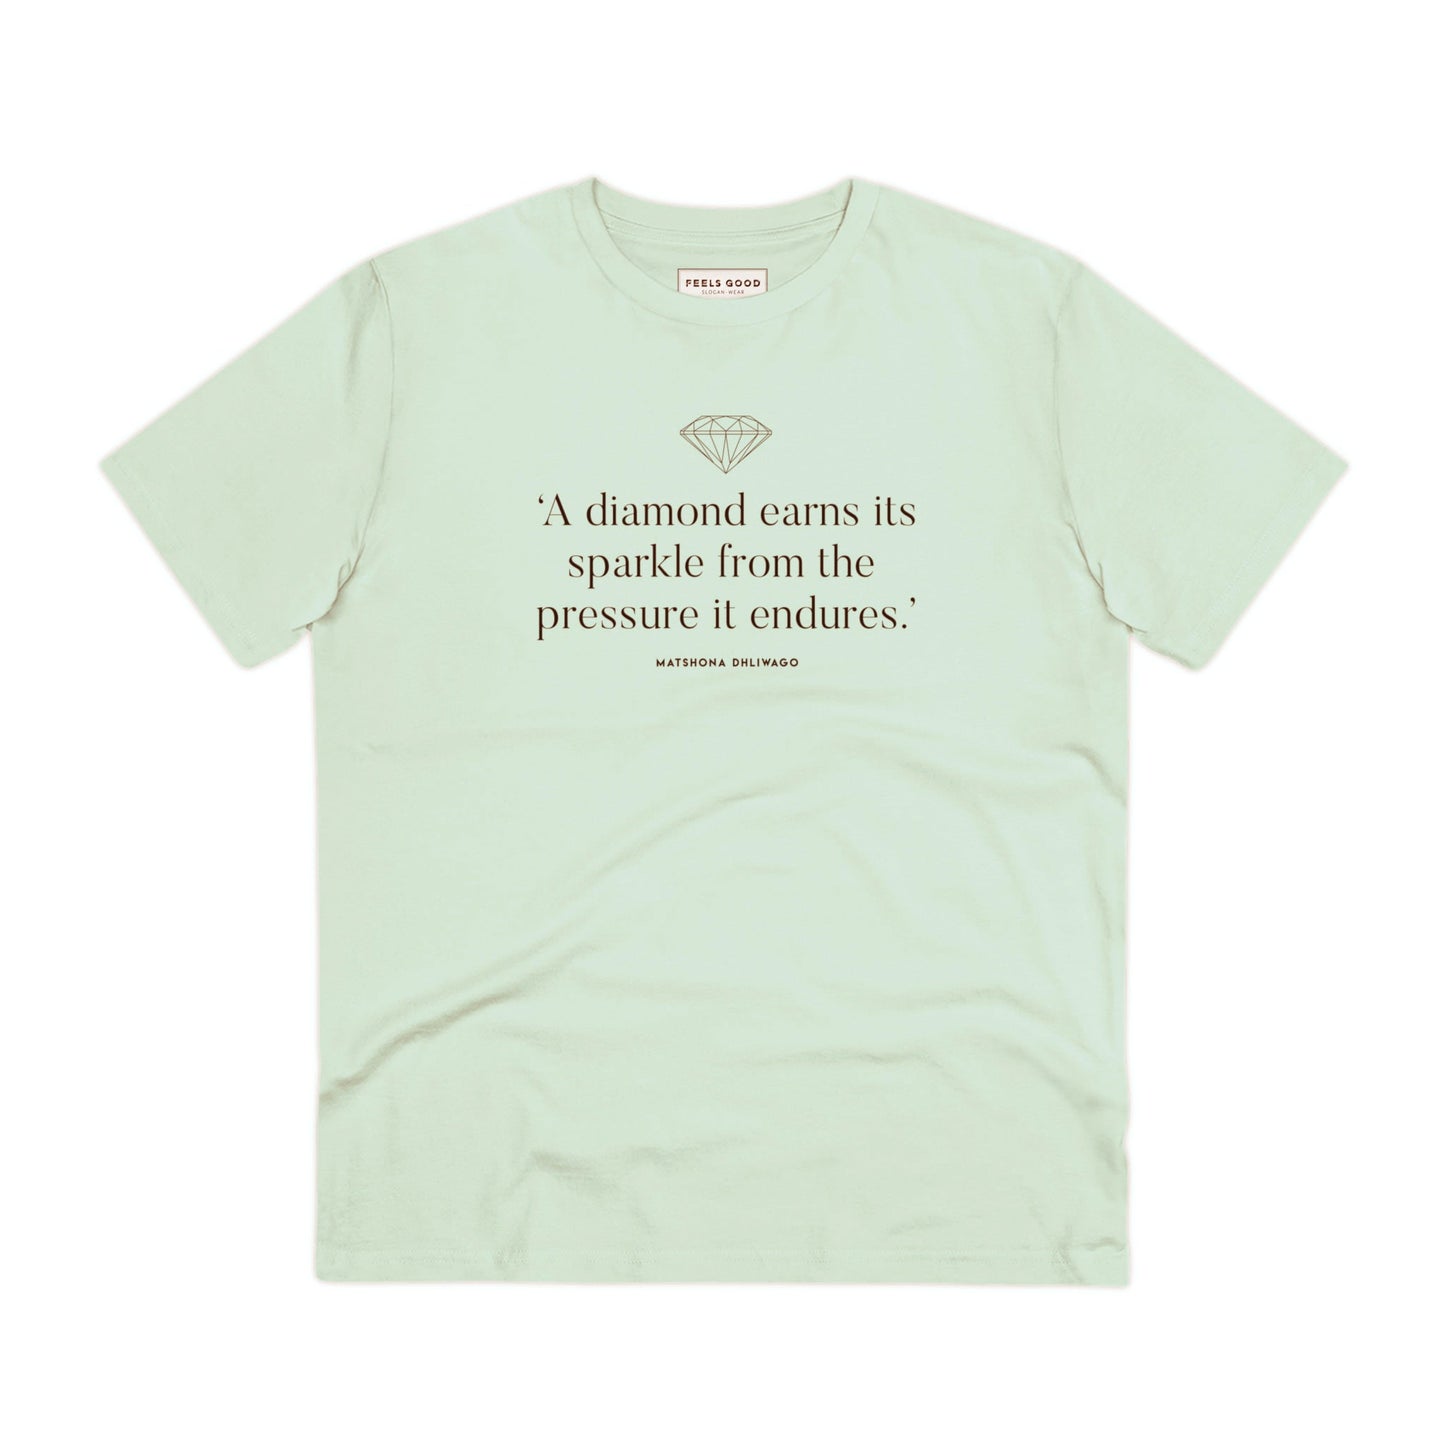 Contemporary 'Diamonds Sparkle' Organic Cotton T-shirt - Diamond Tee